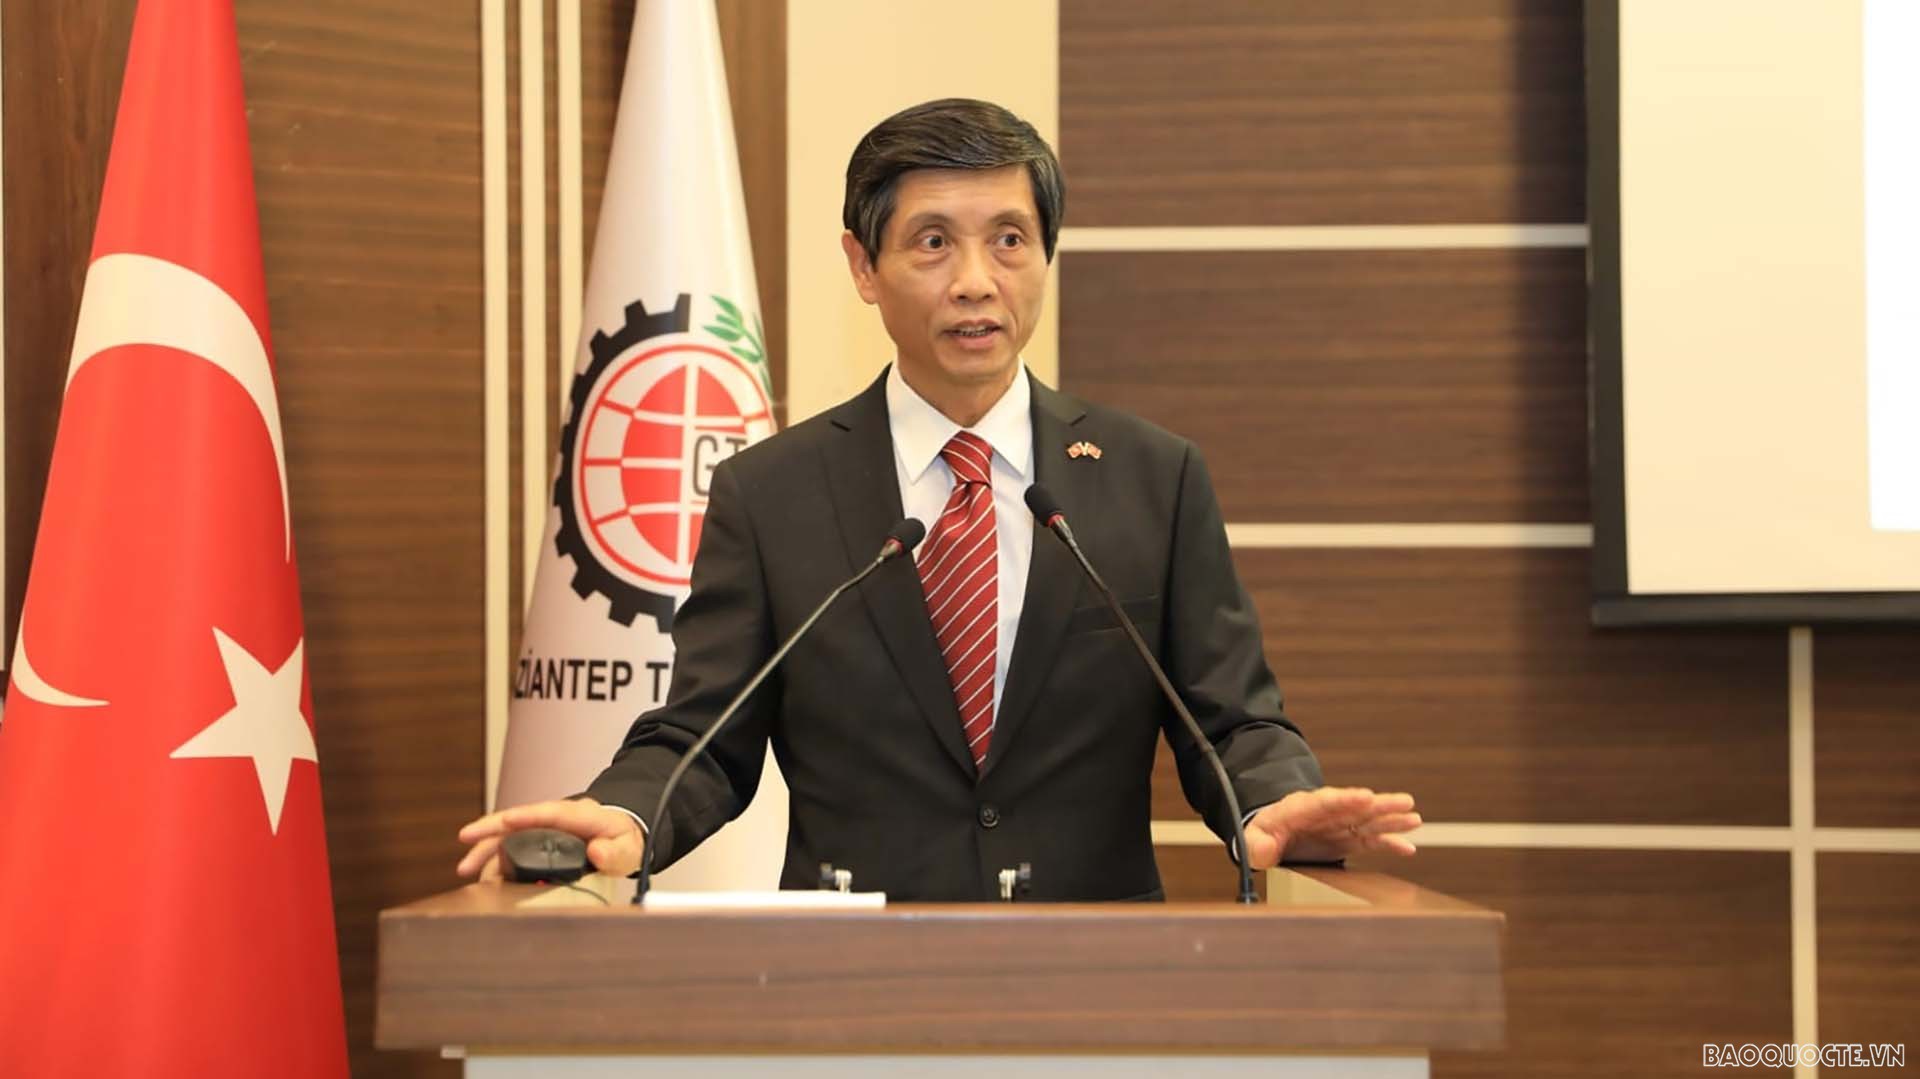 Đại sứ Trần Quang Tuyến phát biểu tại buổi làm việc với Phòng Thương mại và Công nghiệp tỉnh Gaziantep.